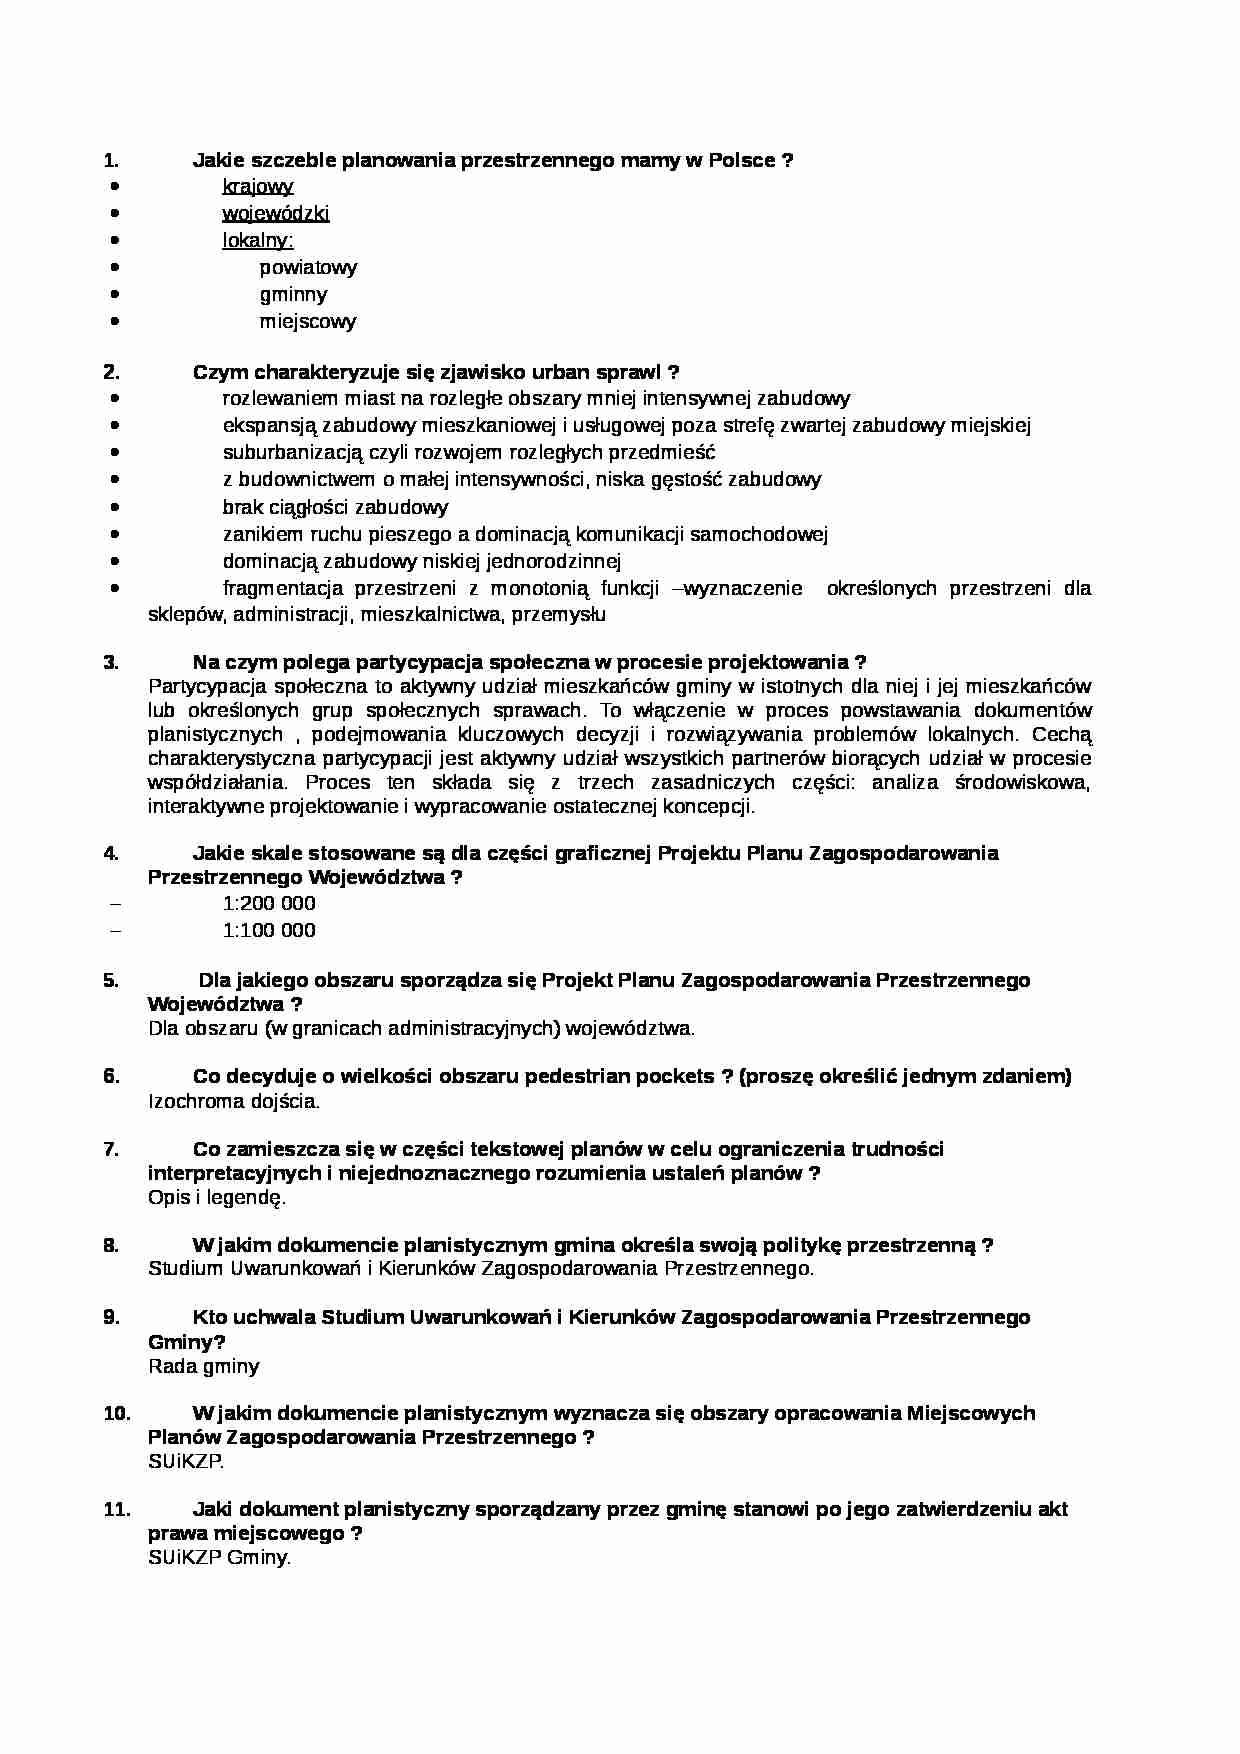 Studia i plany zagospodarowania przestrzennego-pytania na egzamin - strona 1